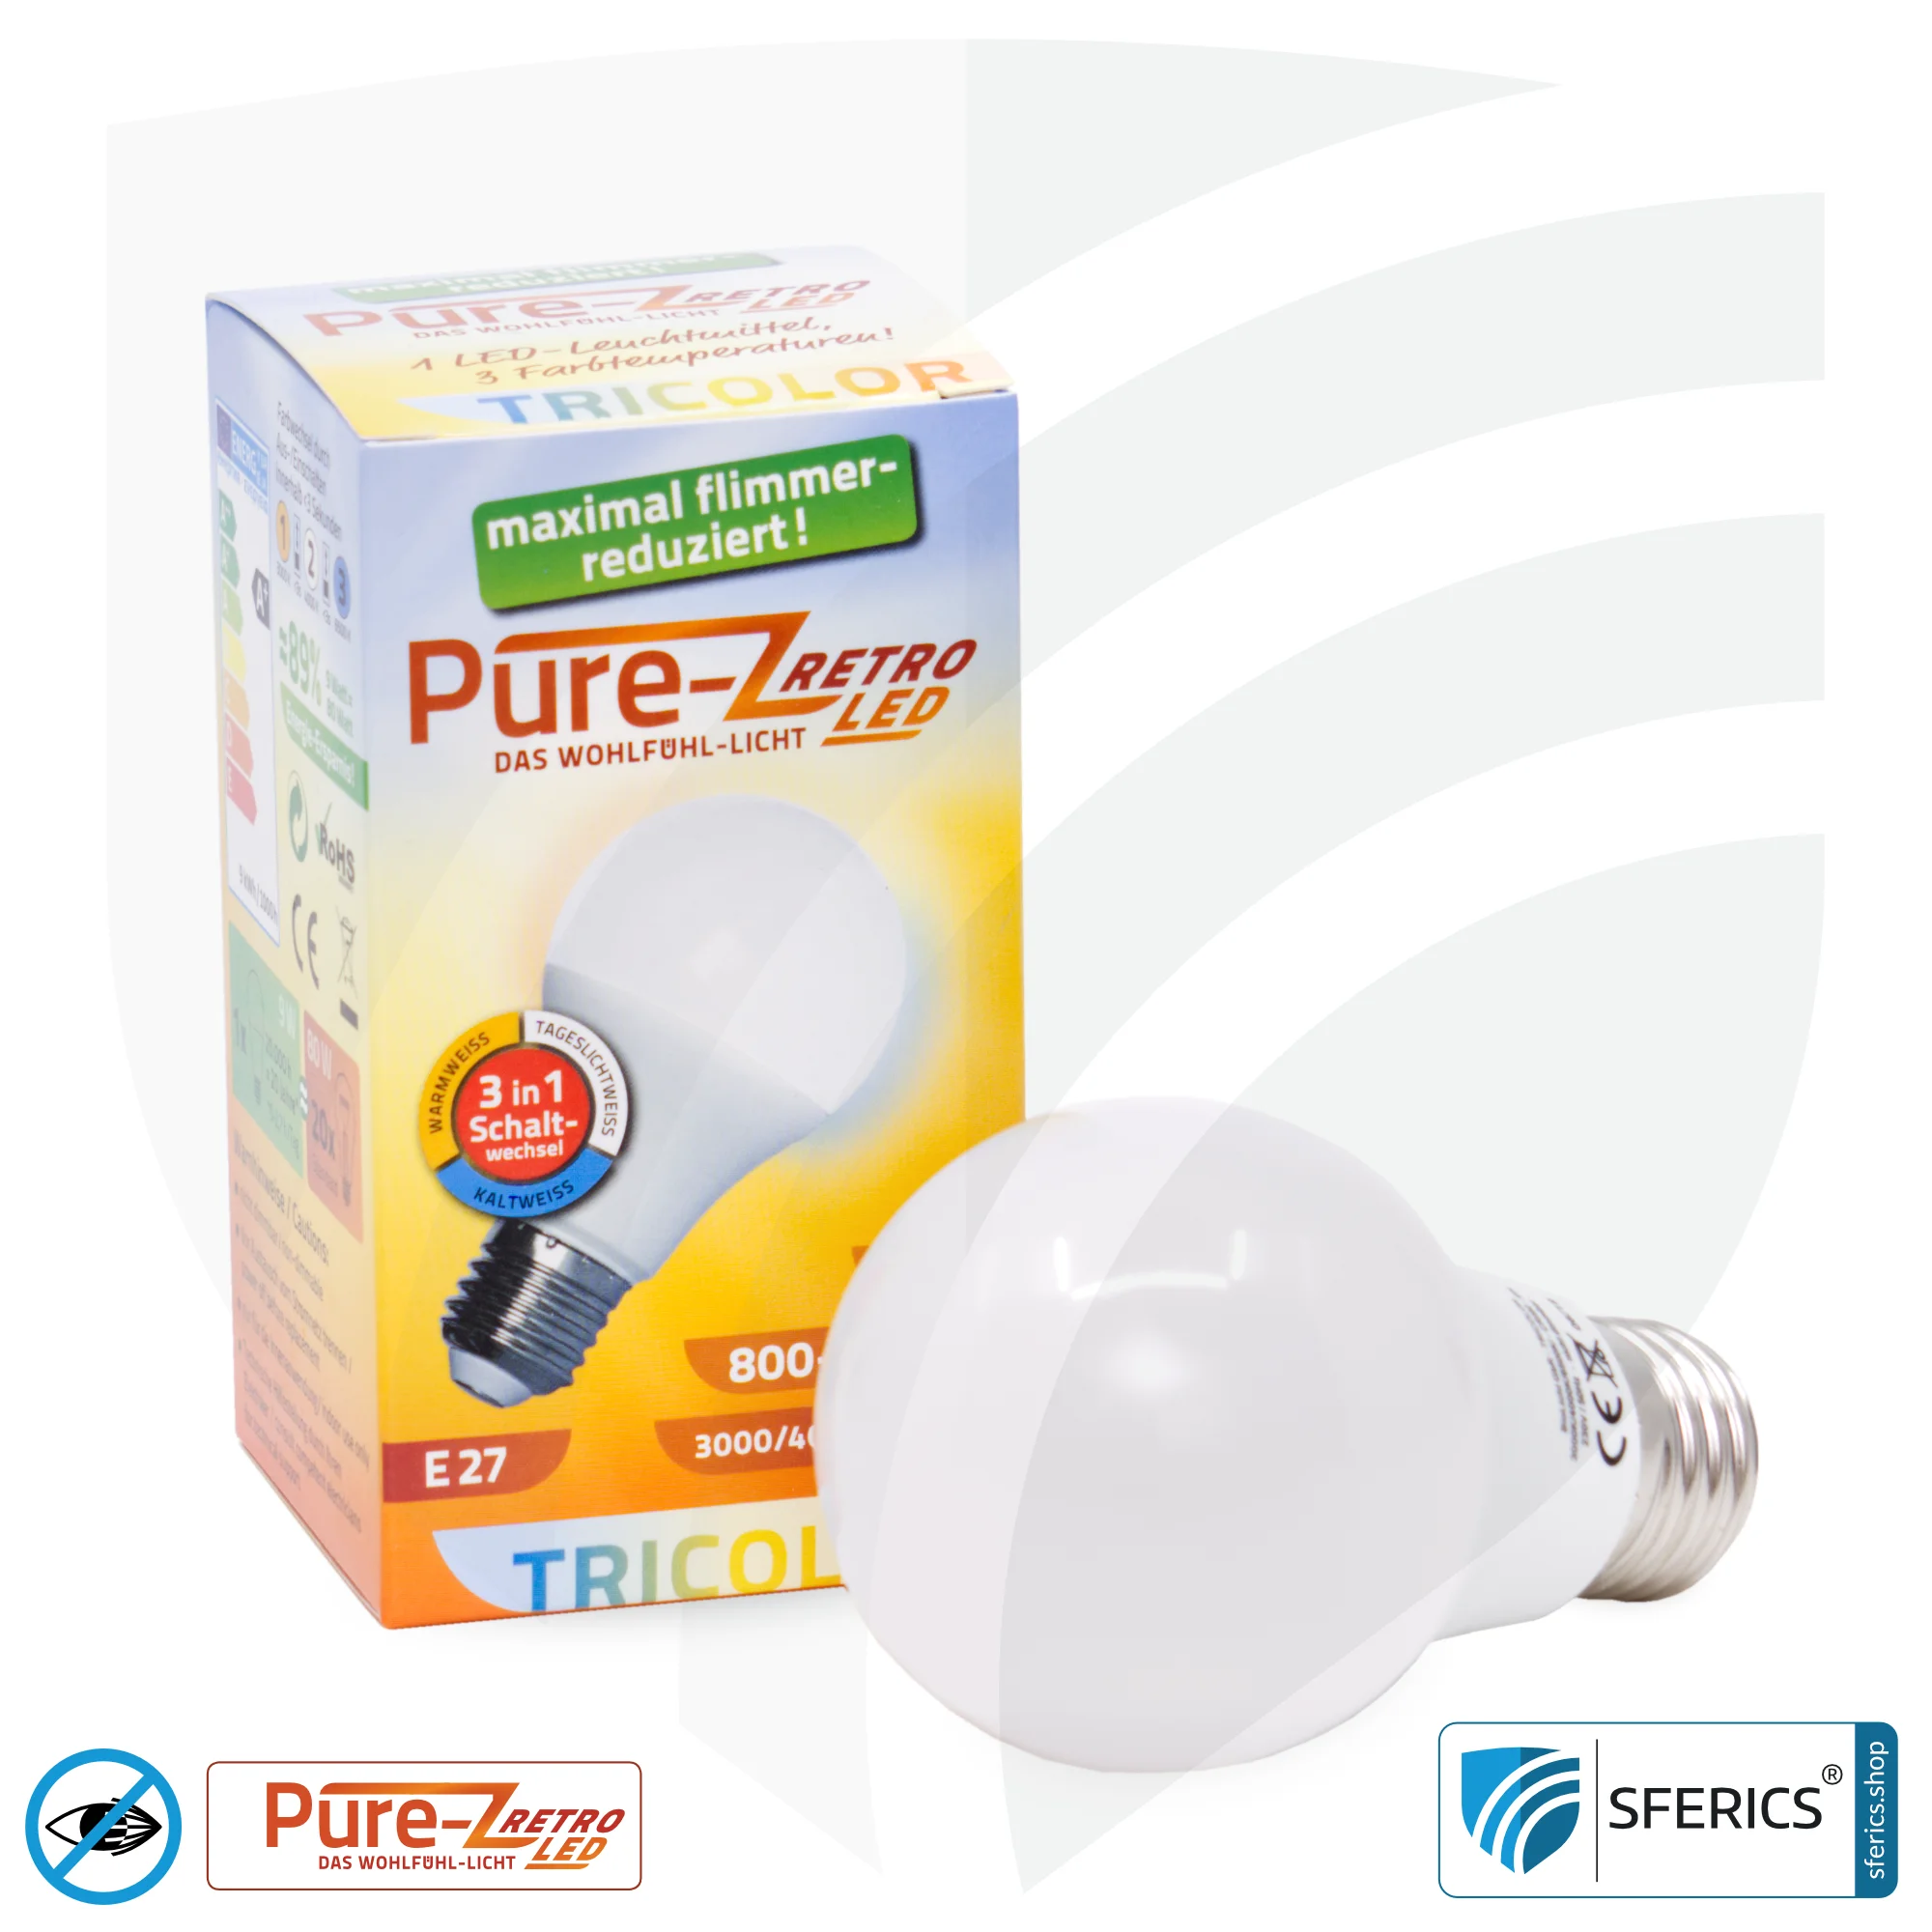 9 watt LED TRICOLOR Pure-Z Retro | 3in1 = 3 switchable light colors | bright like 80 watts, 850 lumens | CRI >90 | flicker-free | E27